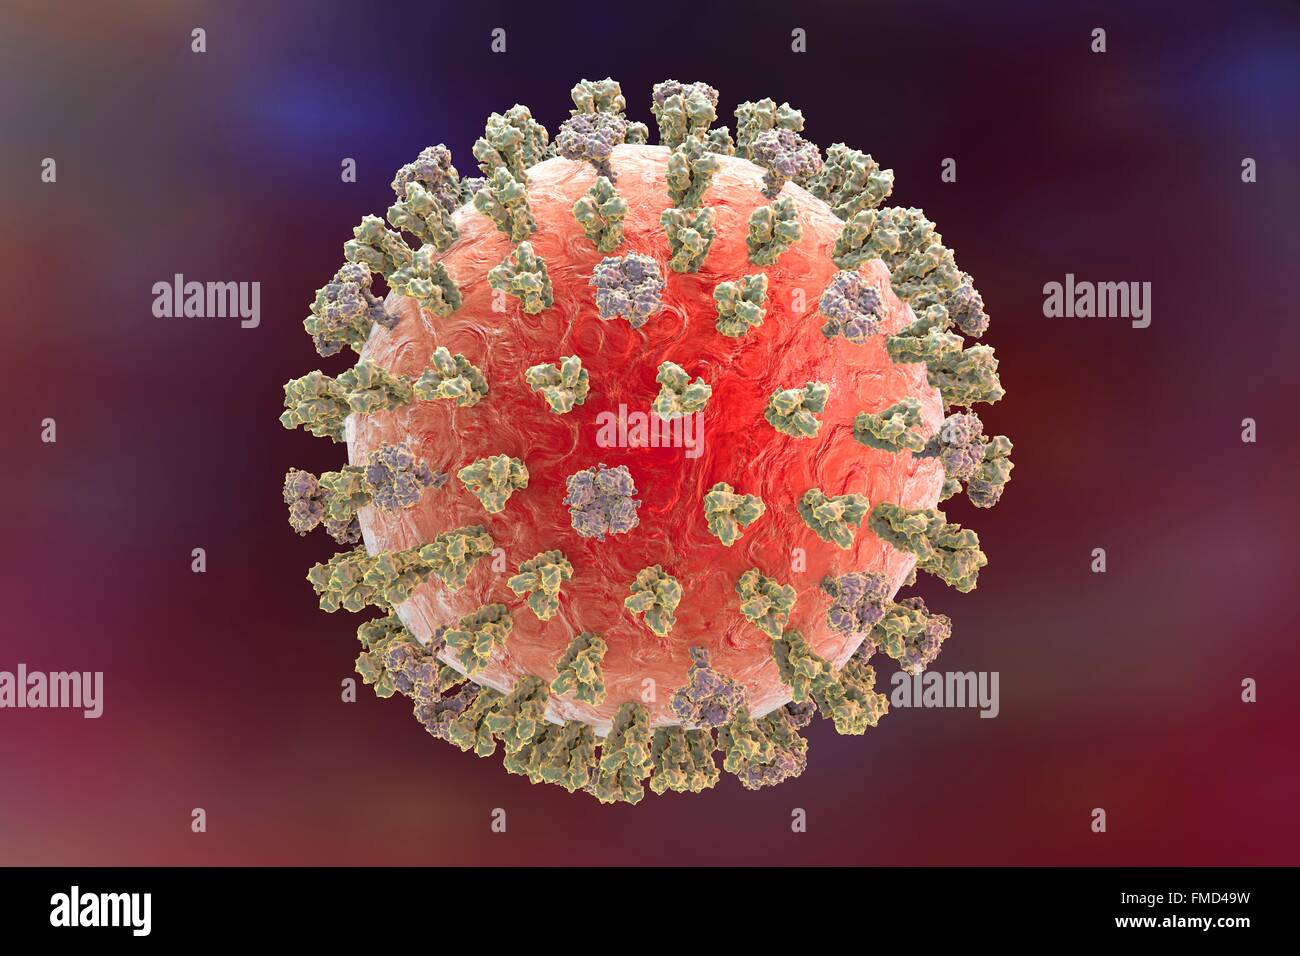 Schweinegrippe-Virus H1N1 Illustration zeigt Influenza-Virus mit Oberfläche Glykoprotein spikes Hämagglutinin (HA, Trimer) und Neuraminidase (NA, Tetramer). Hämagglutinin beteiligt sich an Anlage eines Virus an menschliche Zellen der Atemwege und Neuraminidase an eine Freisetzung des Virus aus einer Zelle. Stockfoto